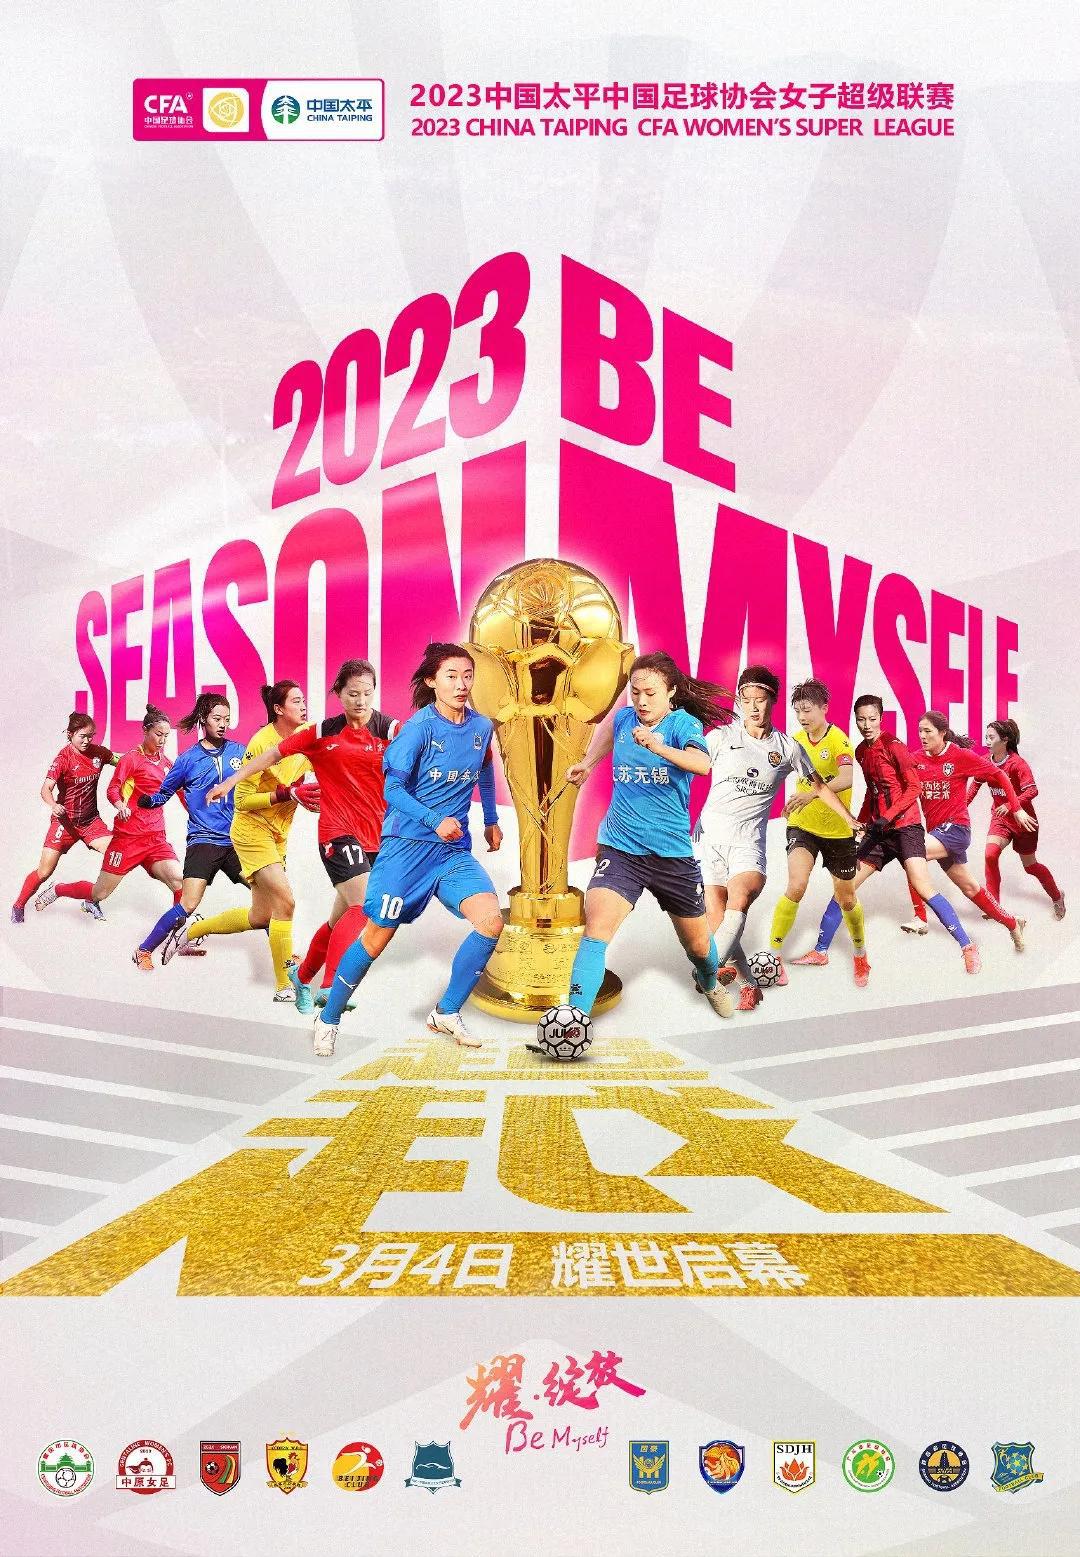 2023赛季女超联赛将于3月4日开赛，但直至2日中午，中国足协官网依旧没有发布包